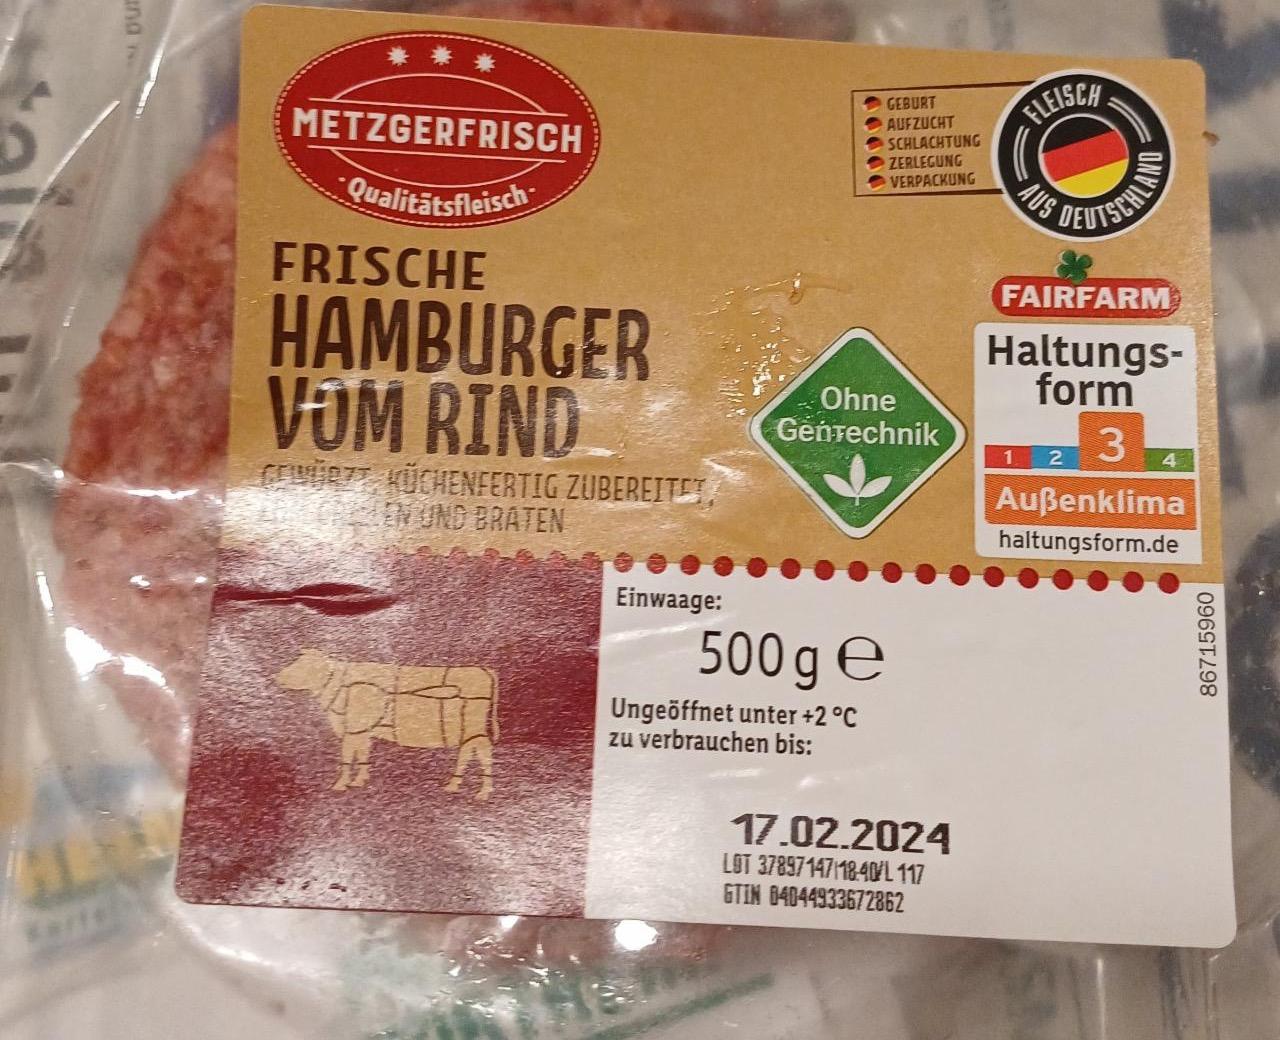 Zdjęcia - Frische Hamburger vom rind Metzgerfrisch